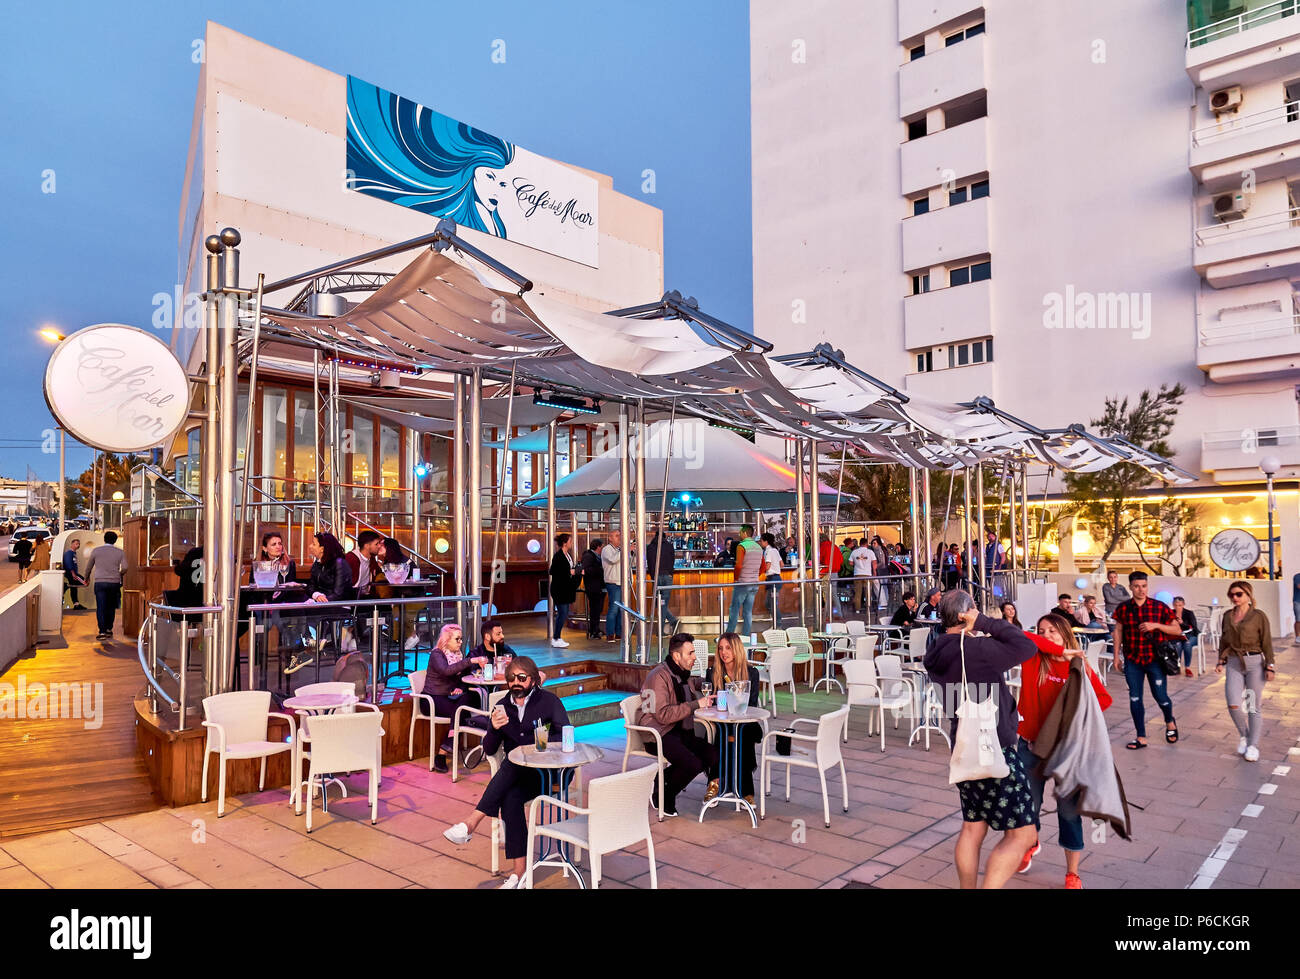 Isola di Ibiza, Spagna - 1 Maggio 2018: persone al Cafe del mar cafe al tramonto. Questo luogo è famoso per le viste per i tramonti e la musica della lounge. Ibiza, Balea Foto Stock